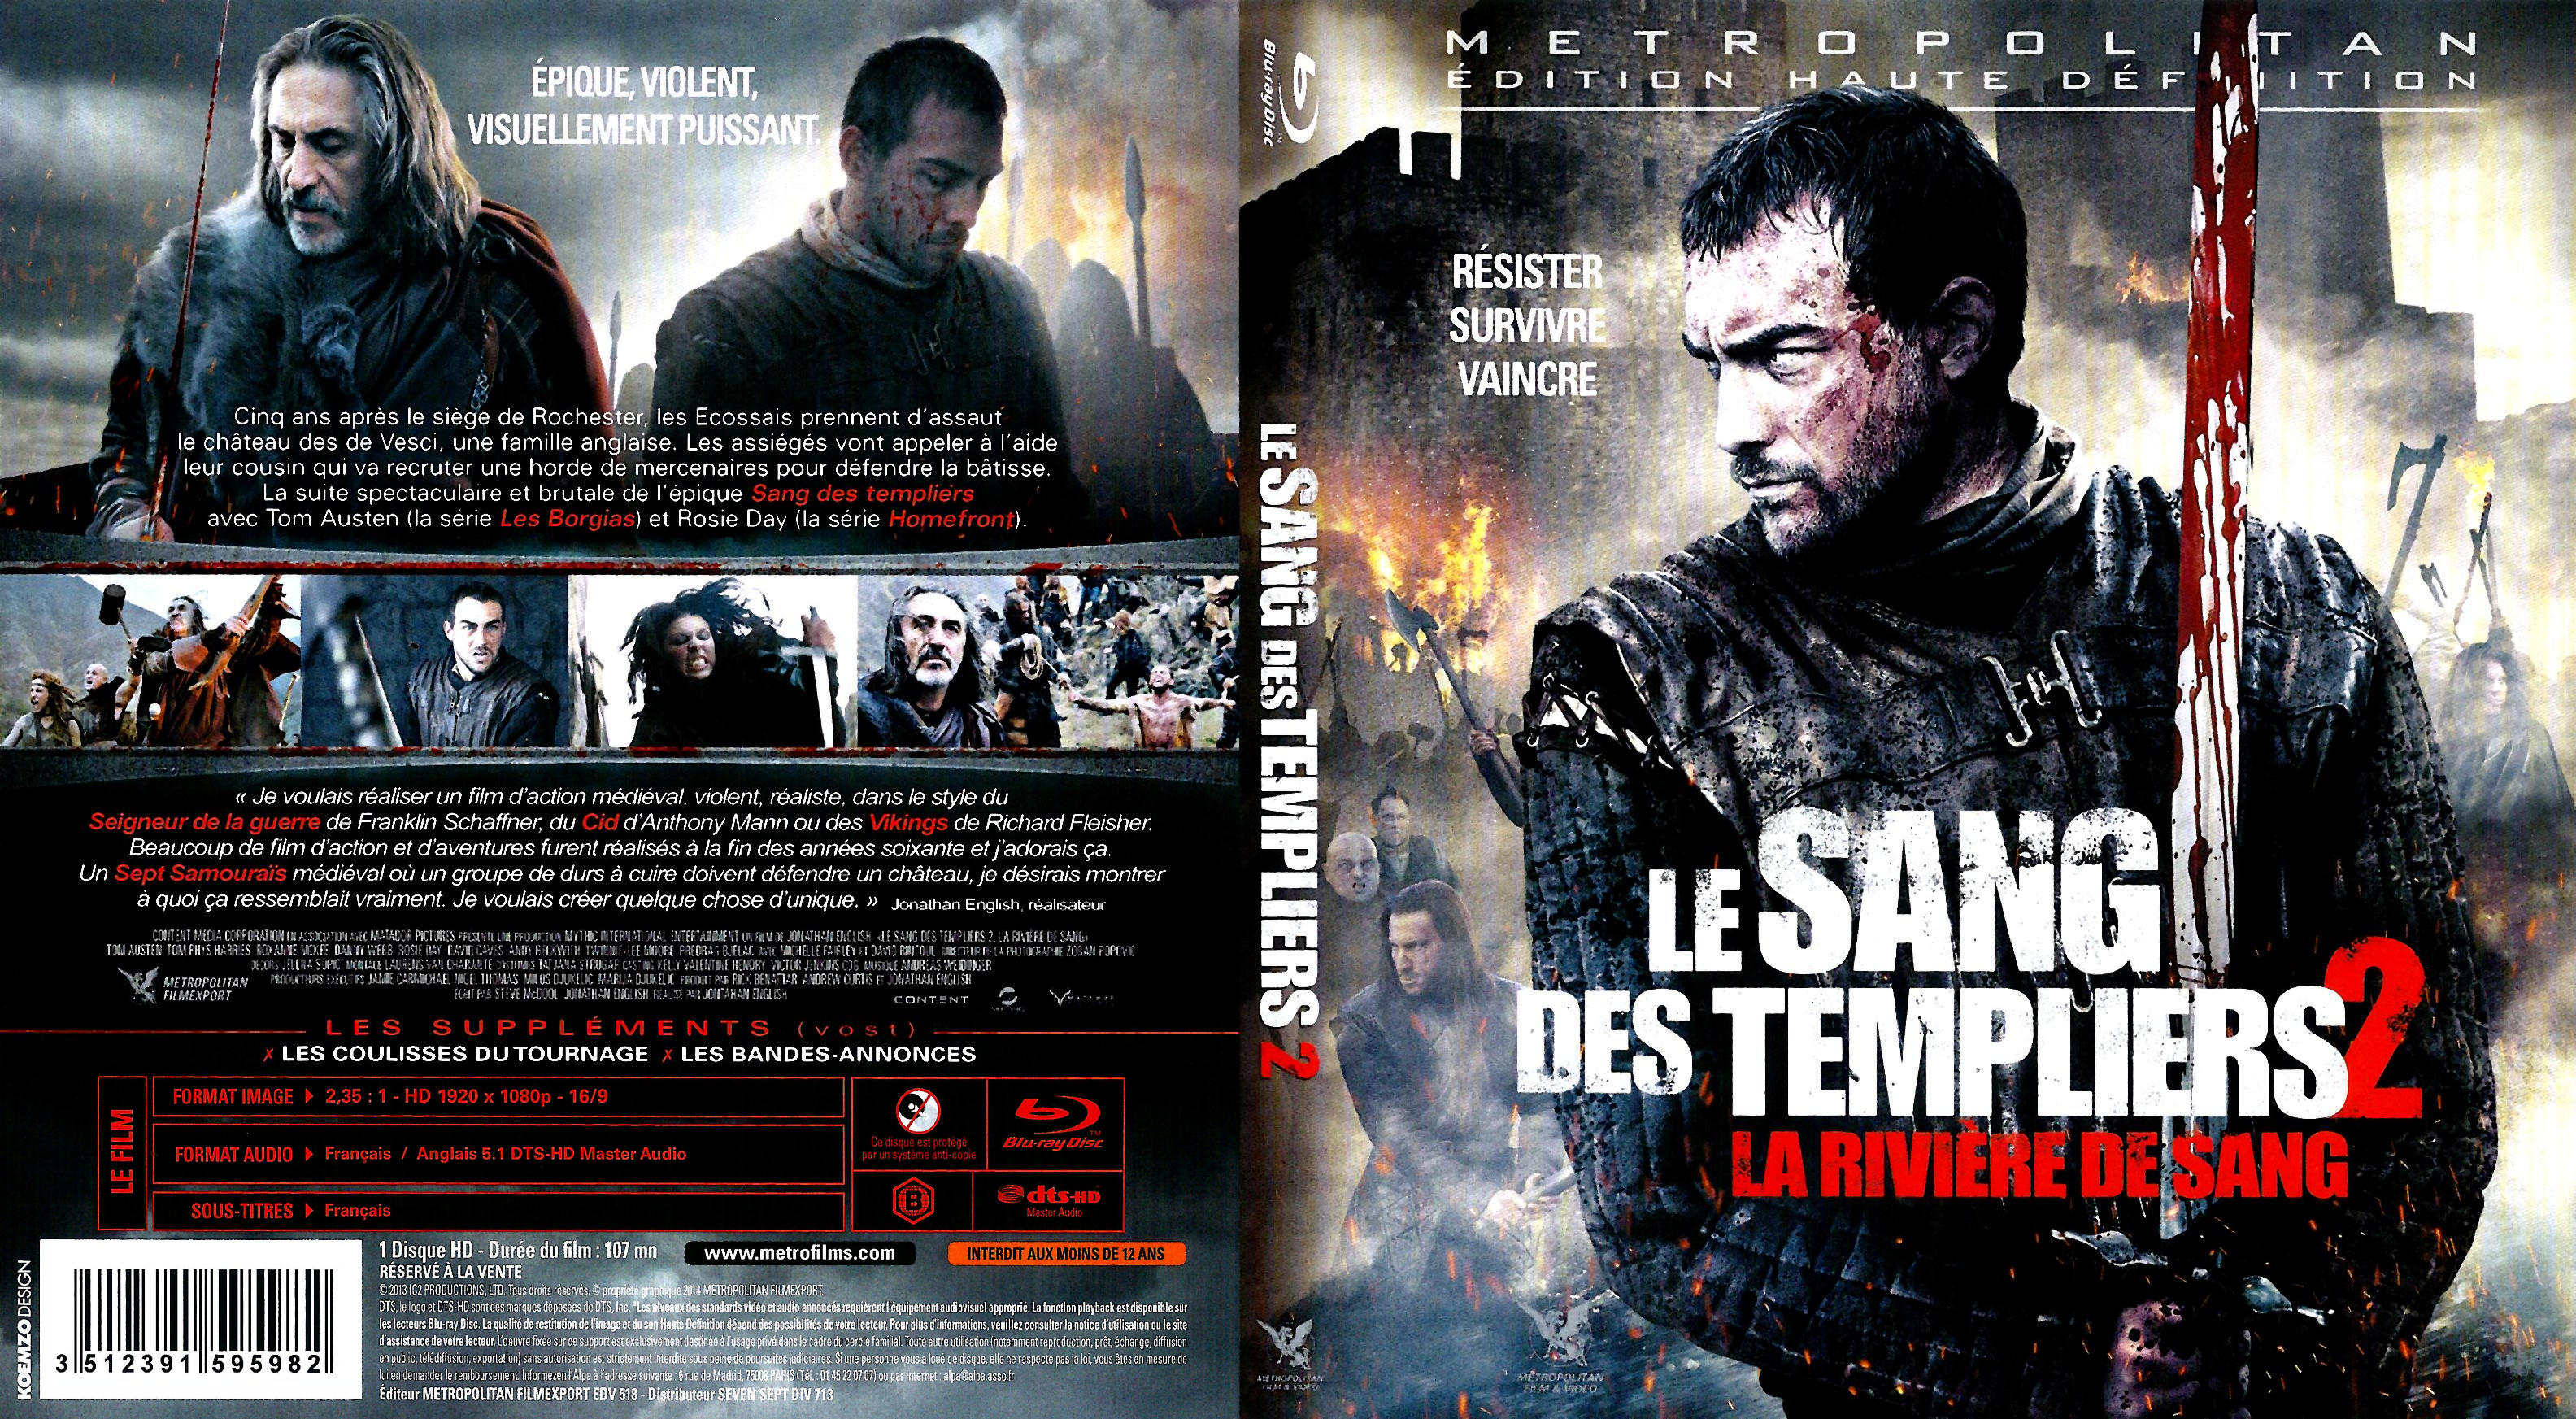 Jaquette DVD Le sang des templiers 2 (BLU-RAY)